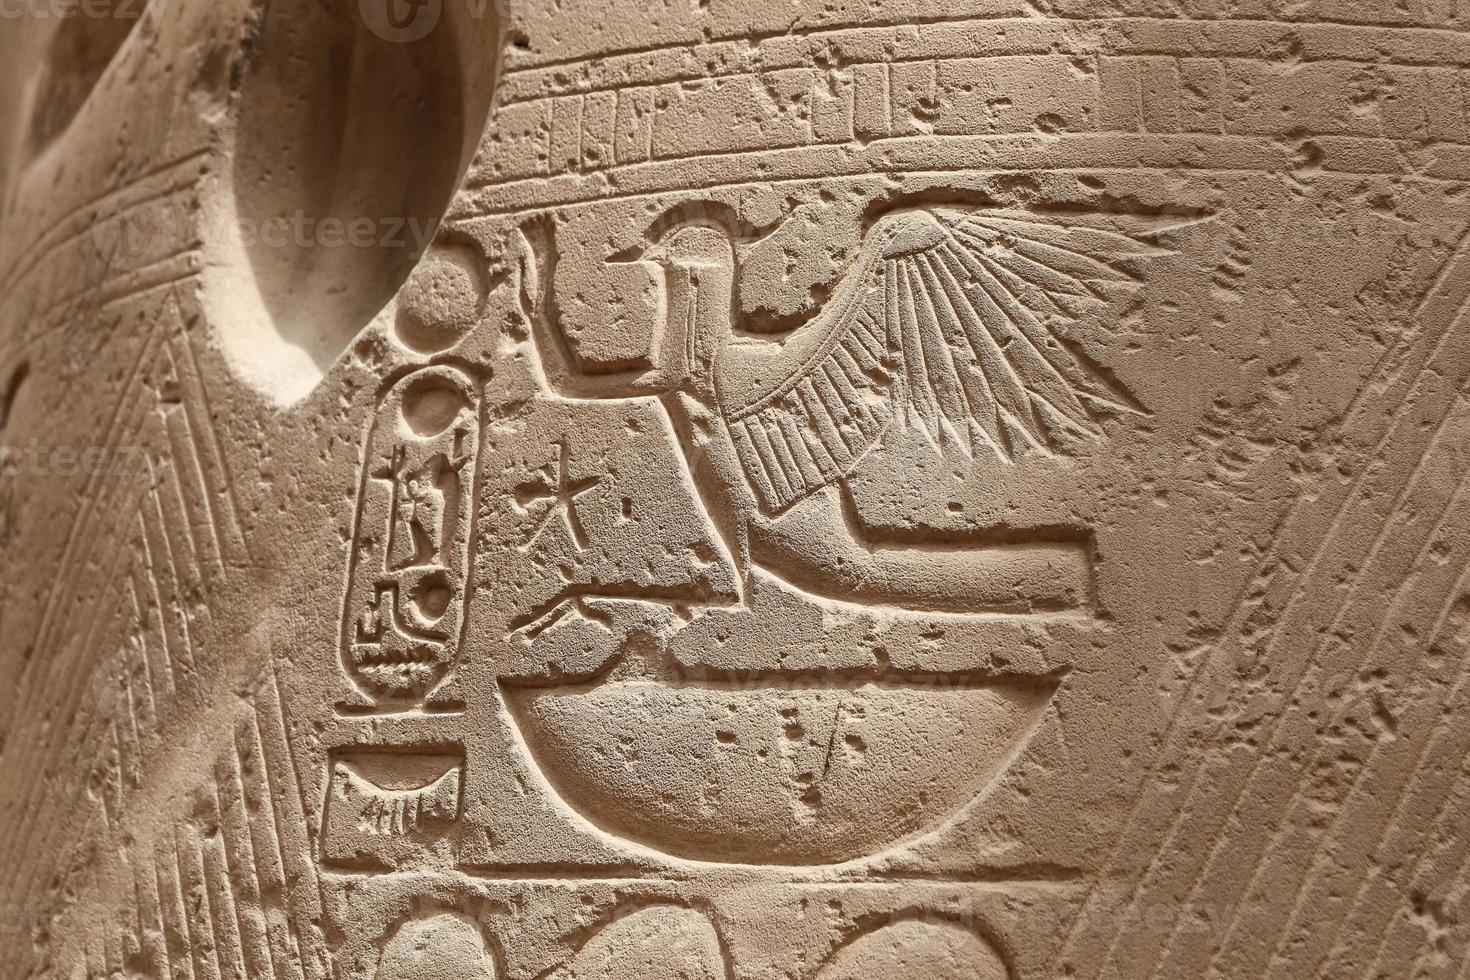 jeroglíficos egipcios en el templo de luxor, luxor, egipto foto